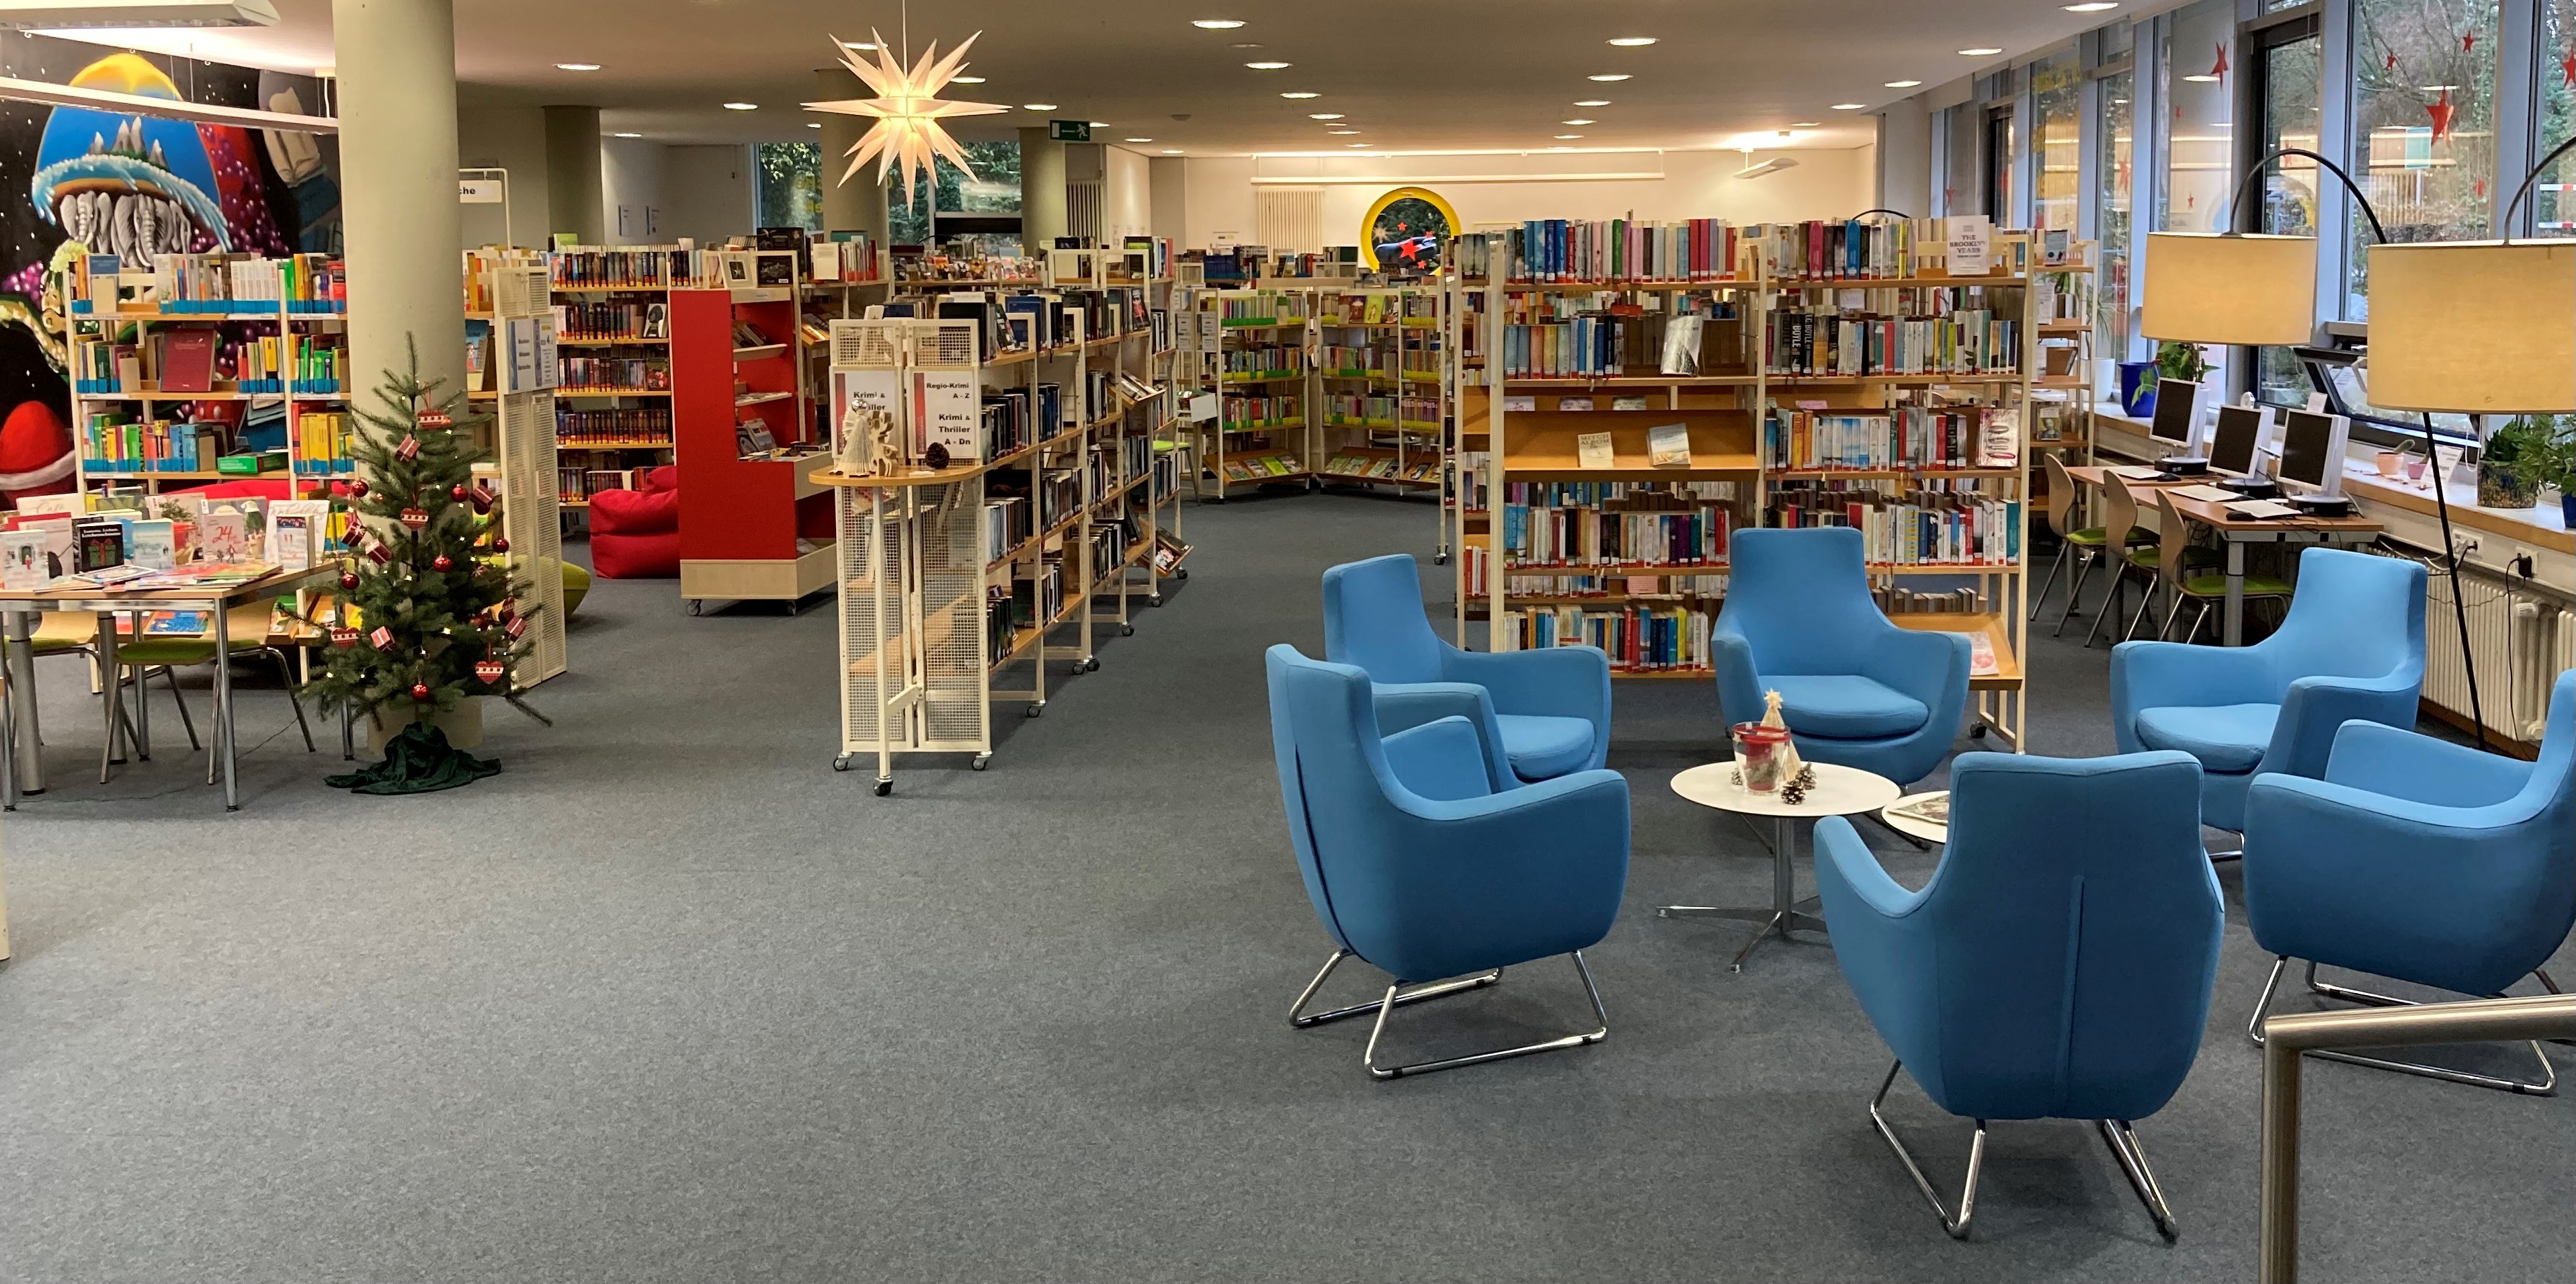 Schul- und Gemeindebibliothek in den Ferien geöffnet